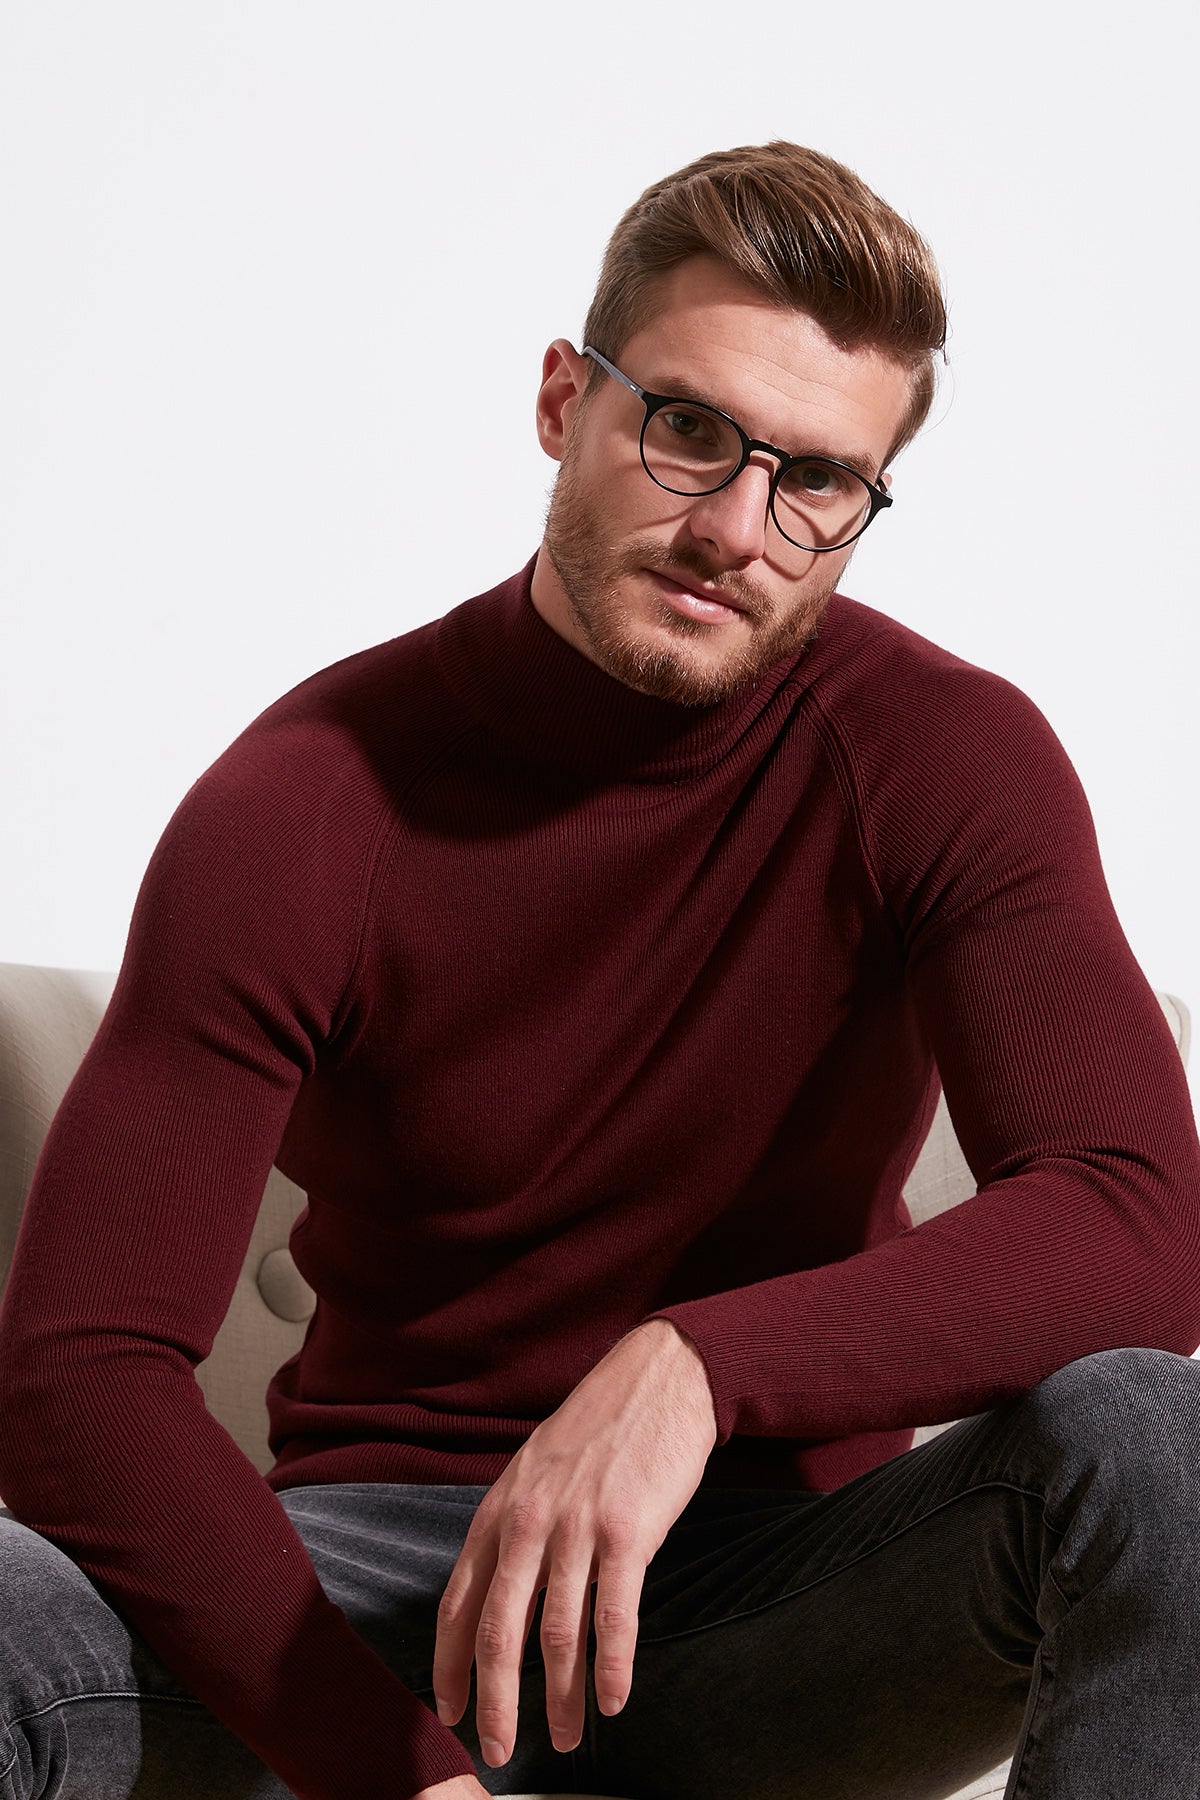 Buratti Slim Fit Turtleneck Cotton Knitwear Men's Sweater - EKRU